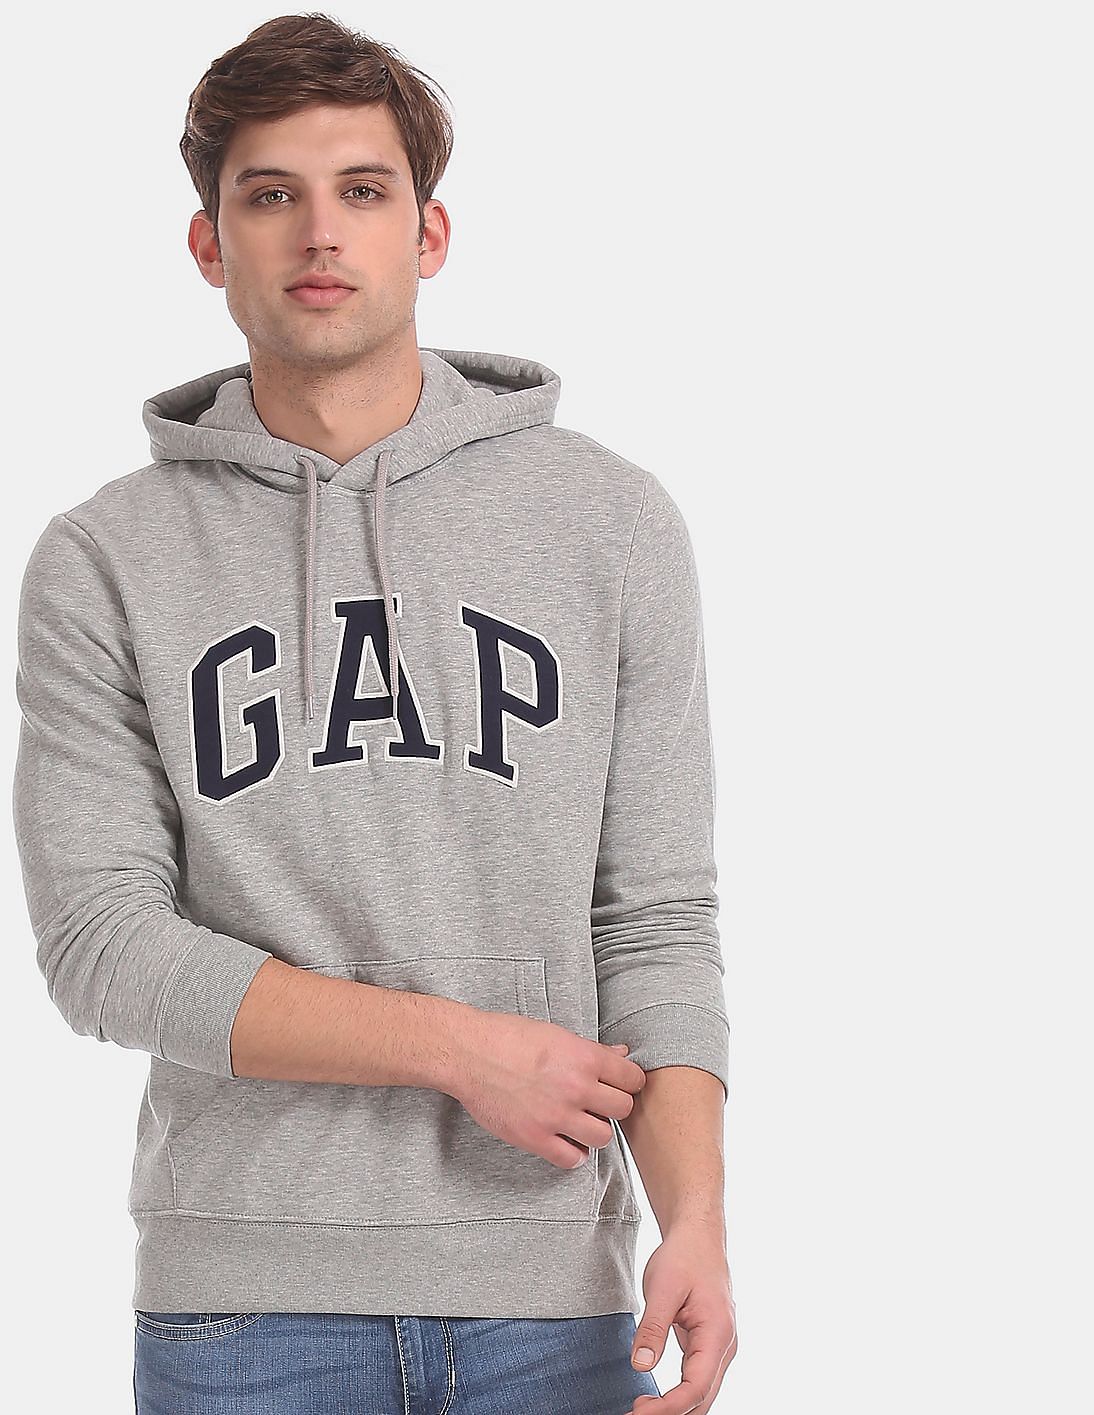 Buy > grey gap zip up > in stock